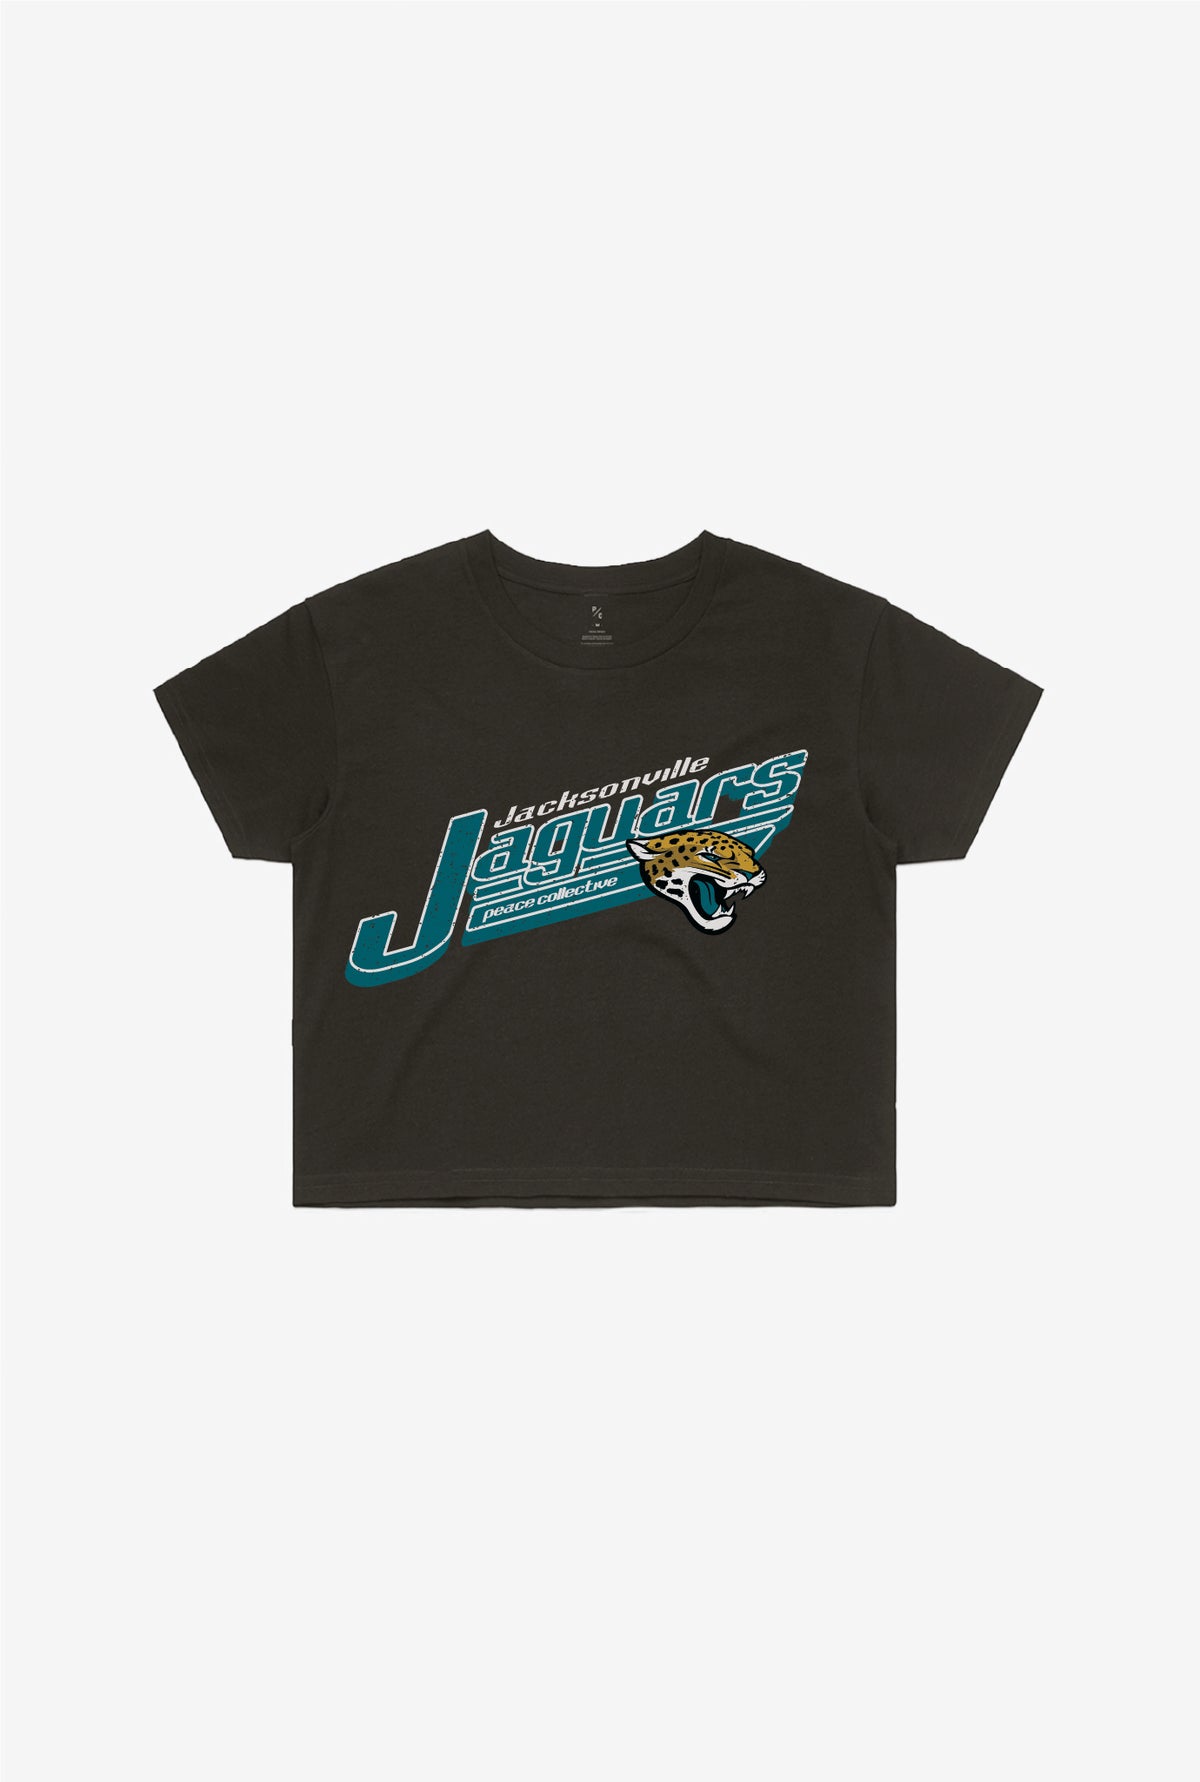 Jacksonville Jaguars Vintage Cropped T-Shirt - Black